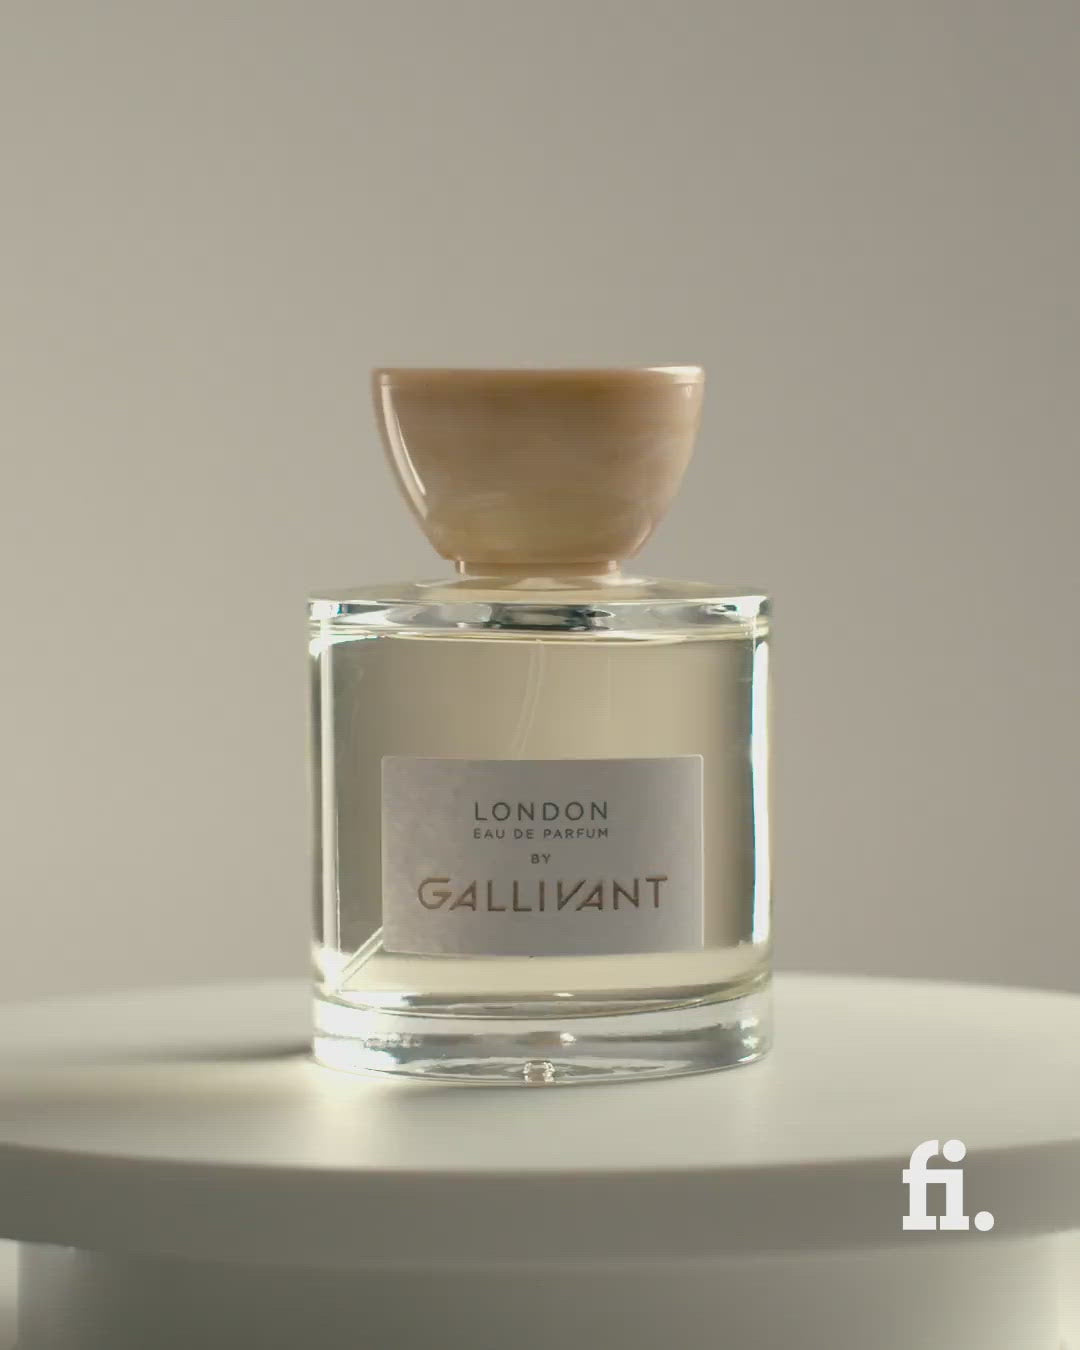 Video of London Eau de Parfum 30ml Bottle by Gallivant 